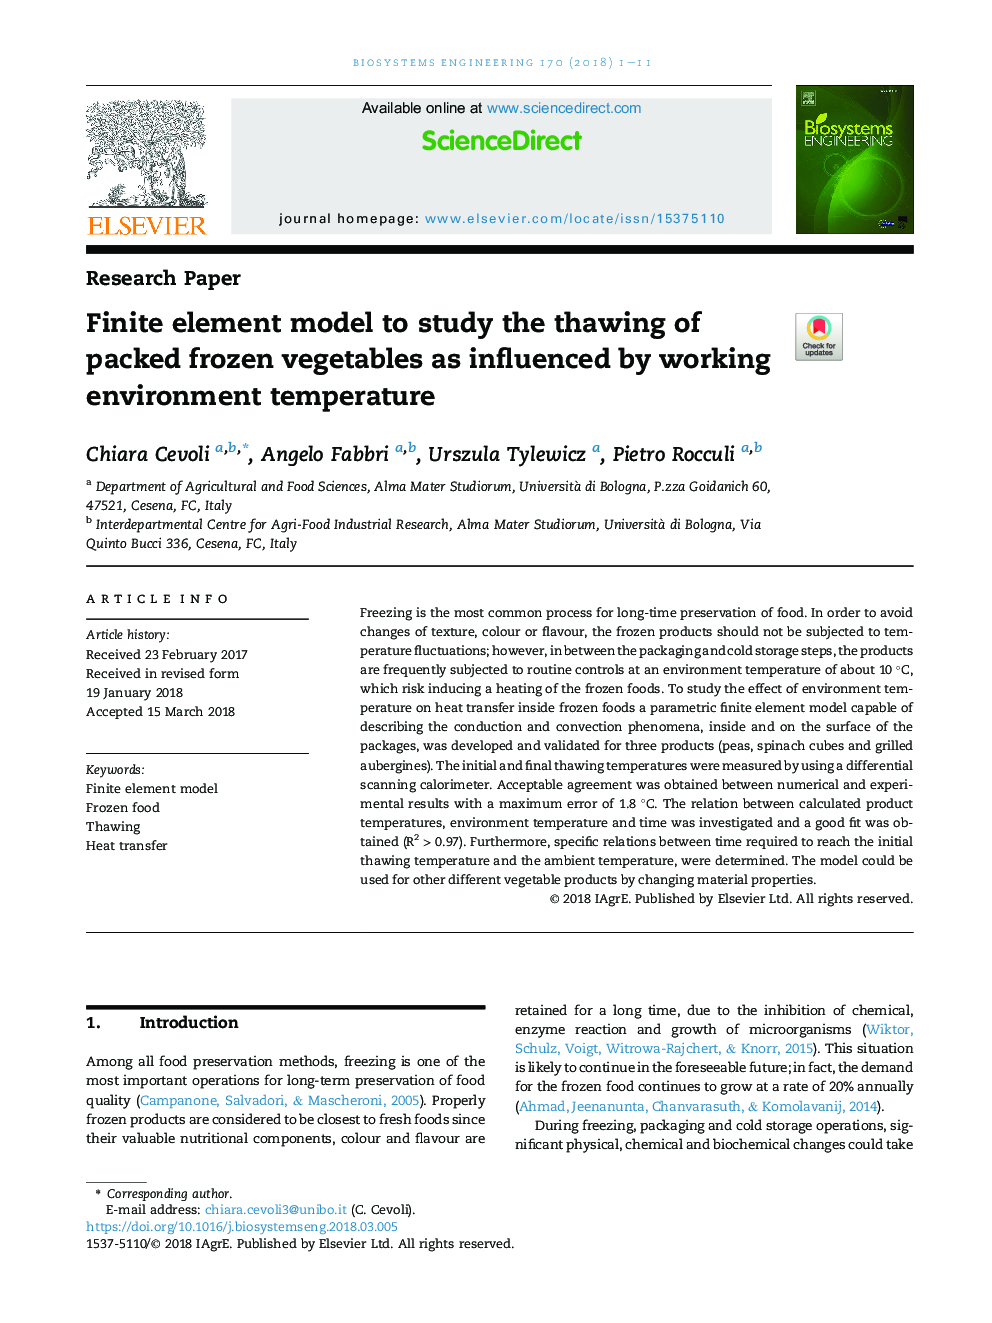 مدل عنصر محدود برای مطالعه یخ زدن سبزیجات یخ زده بسته بندی شده تحت تاثیر دما محیط کار 